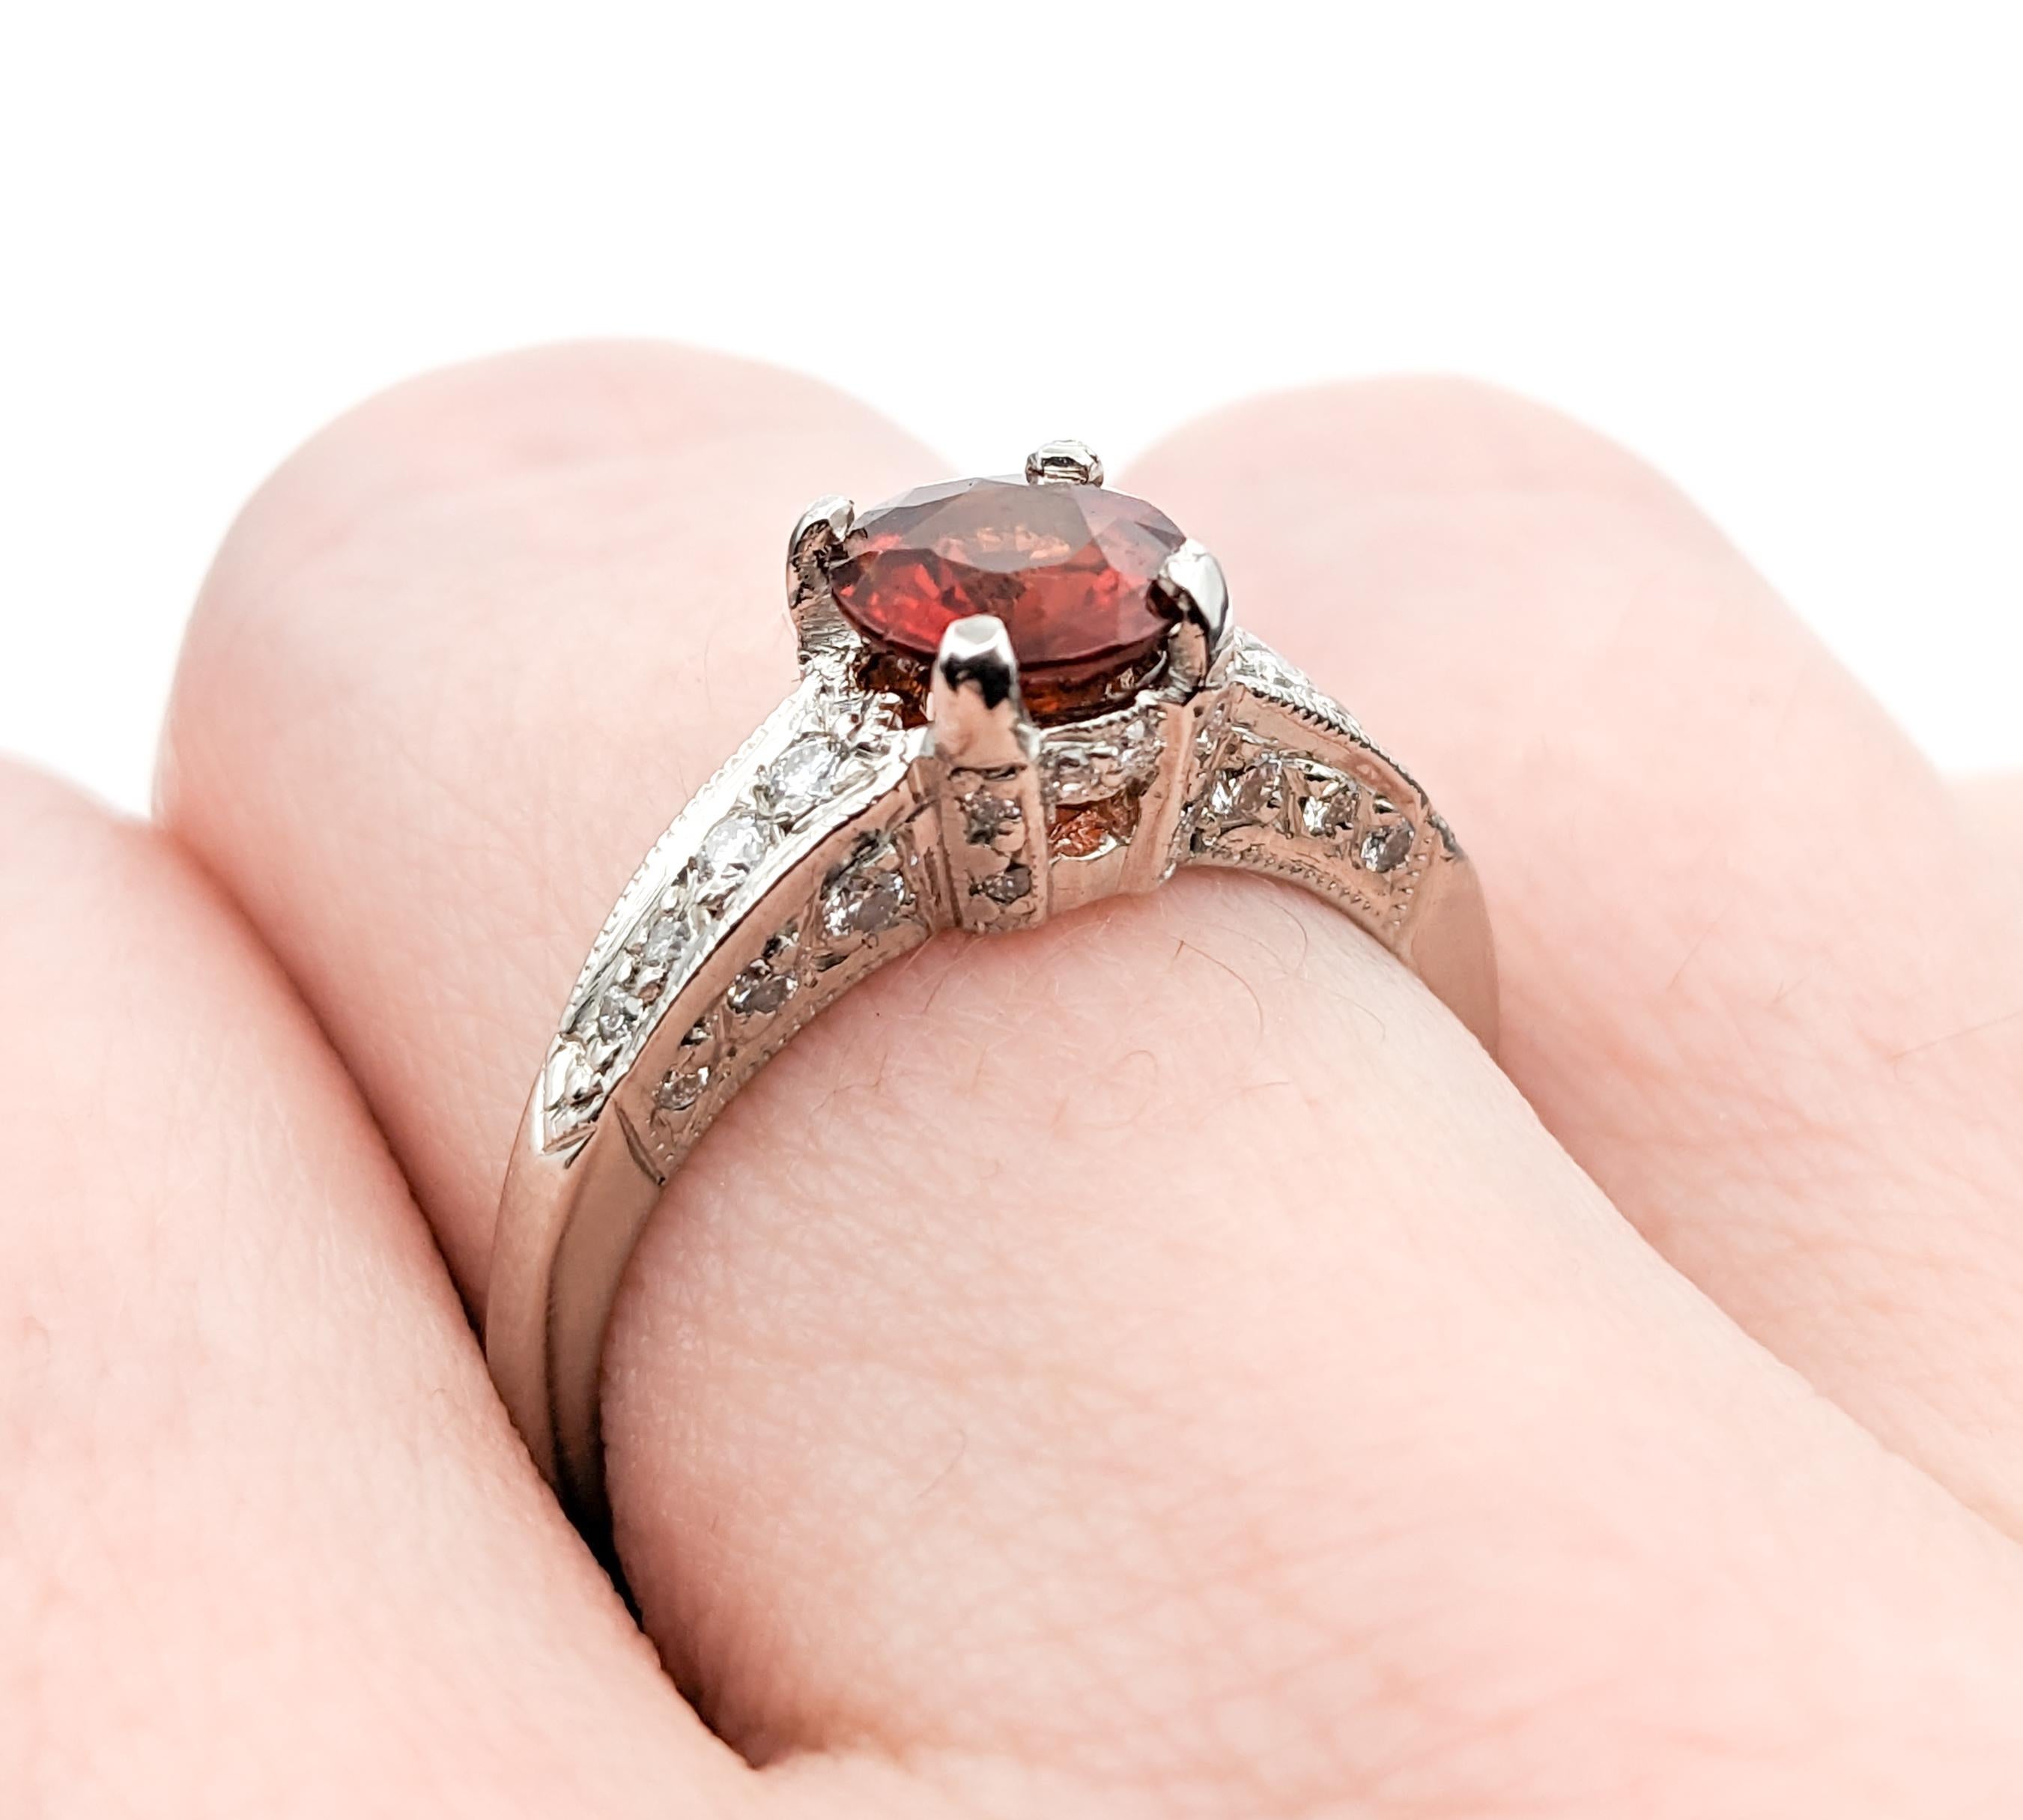 Designer Tacori 1.16ct Garnet & Diamond Ring In Platinum For Sale 1